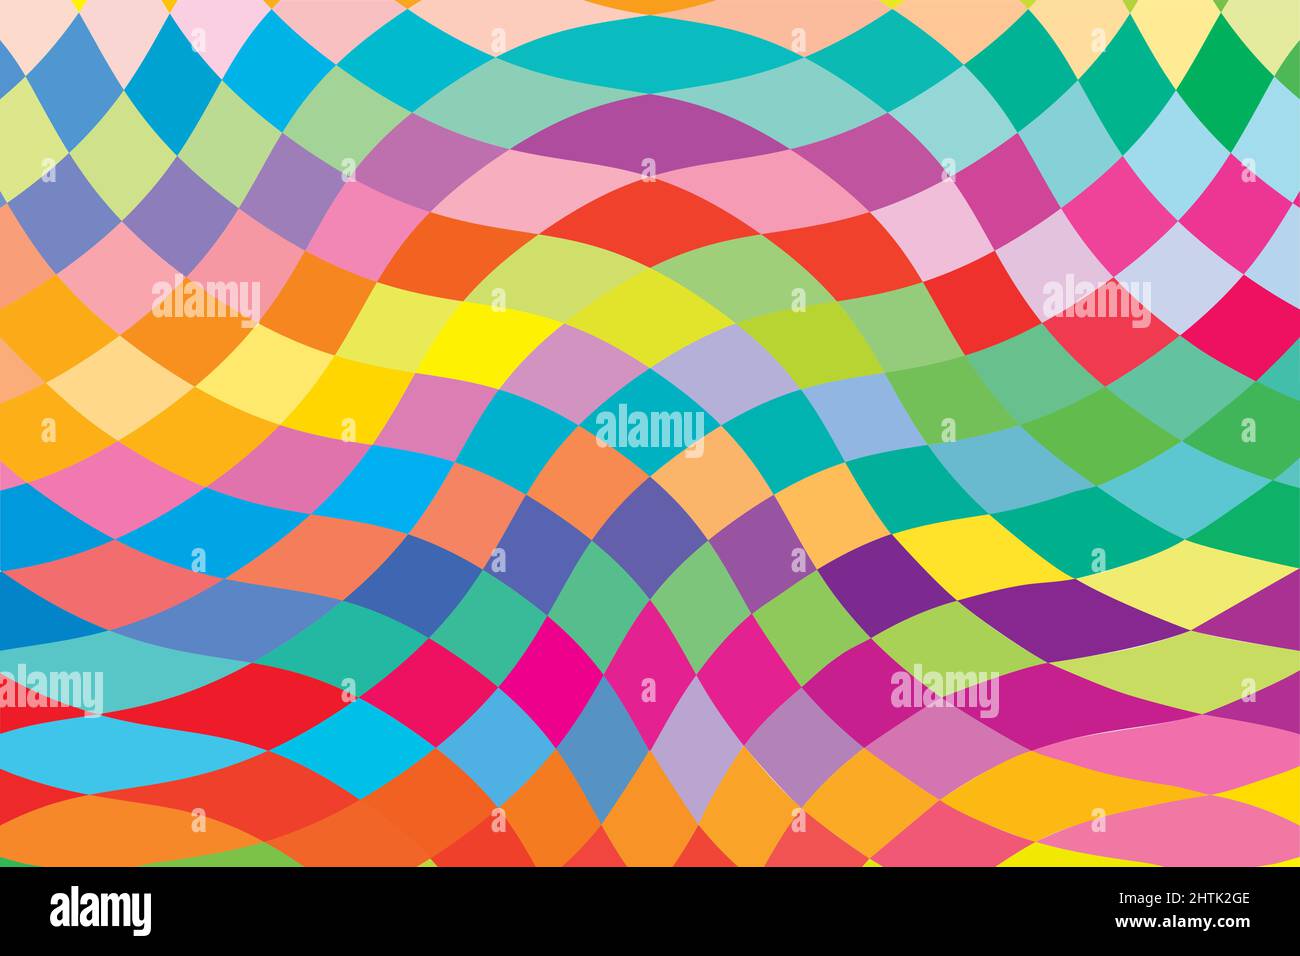 Vektor-Illustration Zeichnung von spektralen mehrfarbigen Diamant-Formen. Abstrakte Muster und Texturen. Farbiges polychromes Segment. Vektorgrafik Stock Vektor